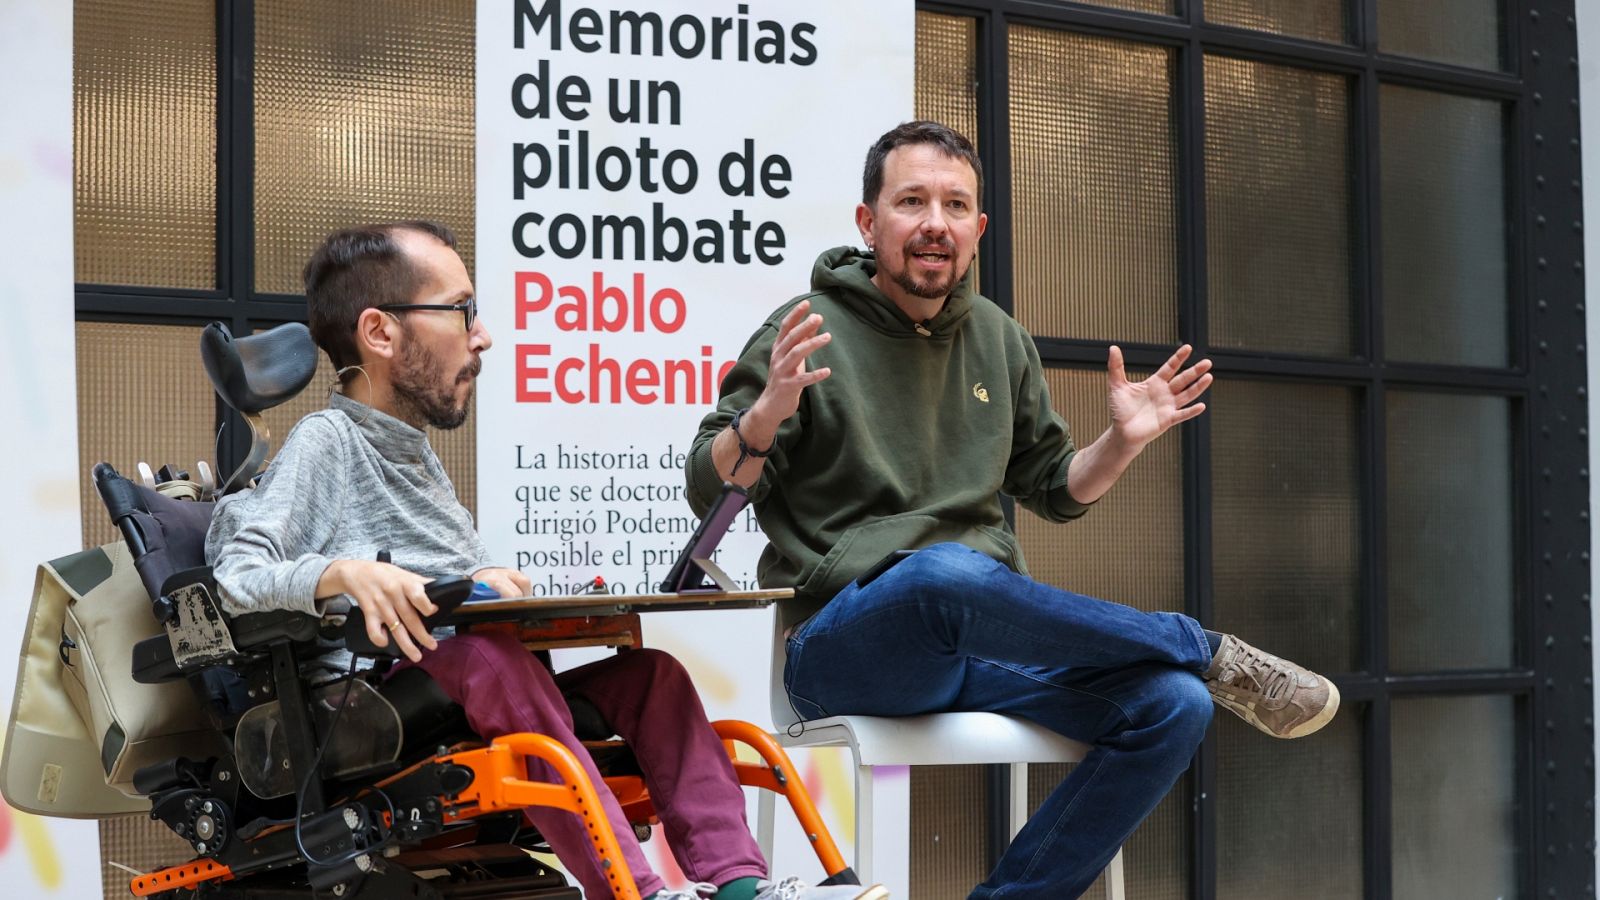 El portavoz de Unidas Podemos en el Congreso, Pablo Echenique, presenta su libro "Memorias de un piloto de combate" acompañado por el exfundador del partido, Pablo Iglesias.